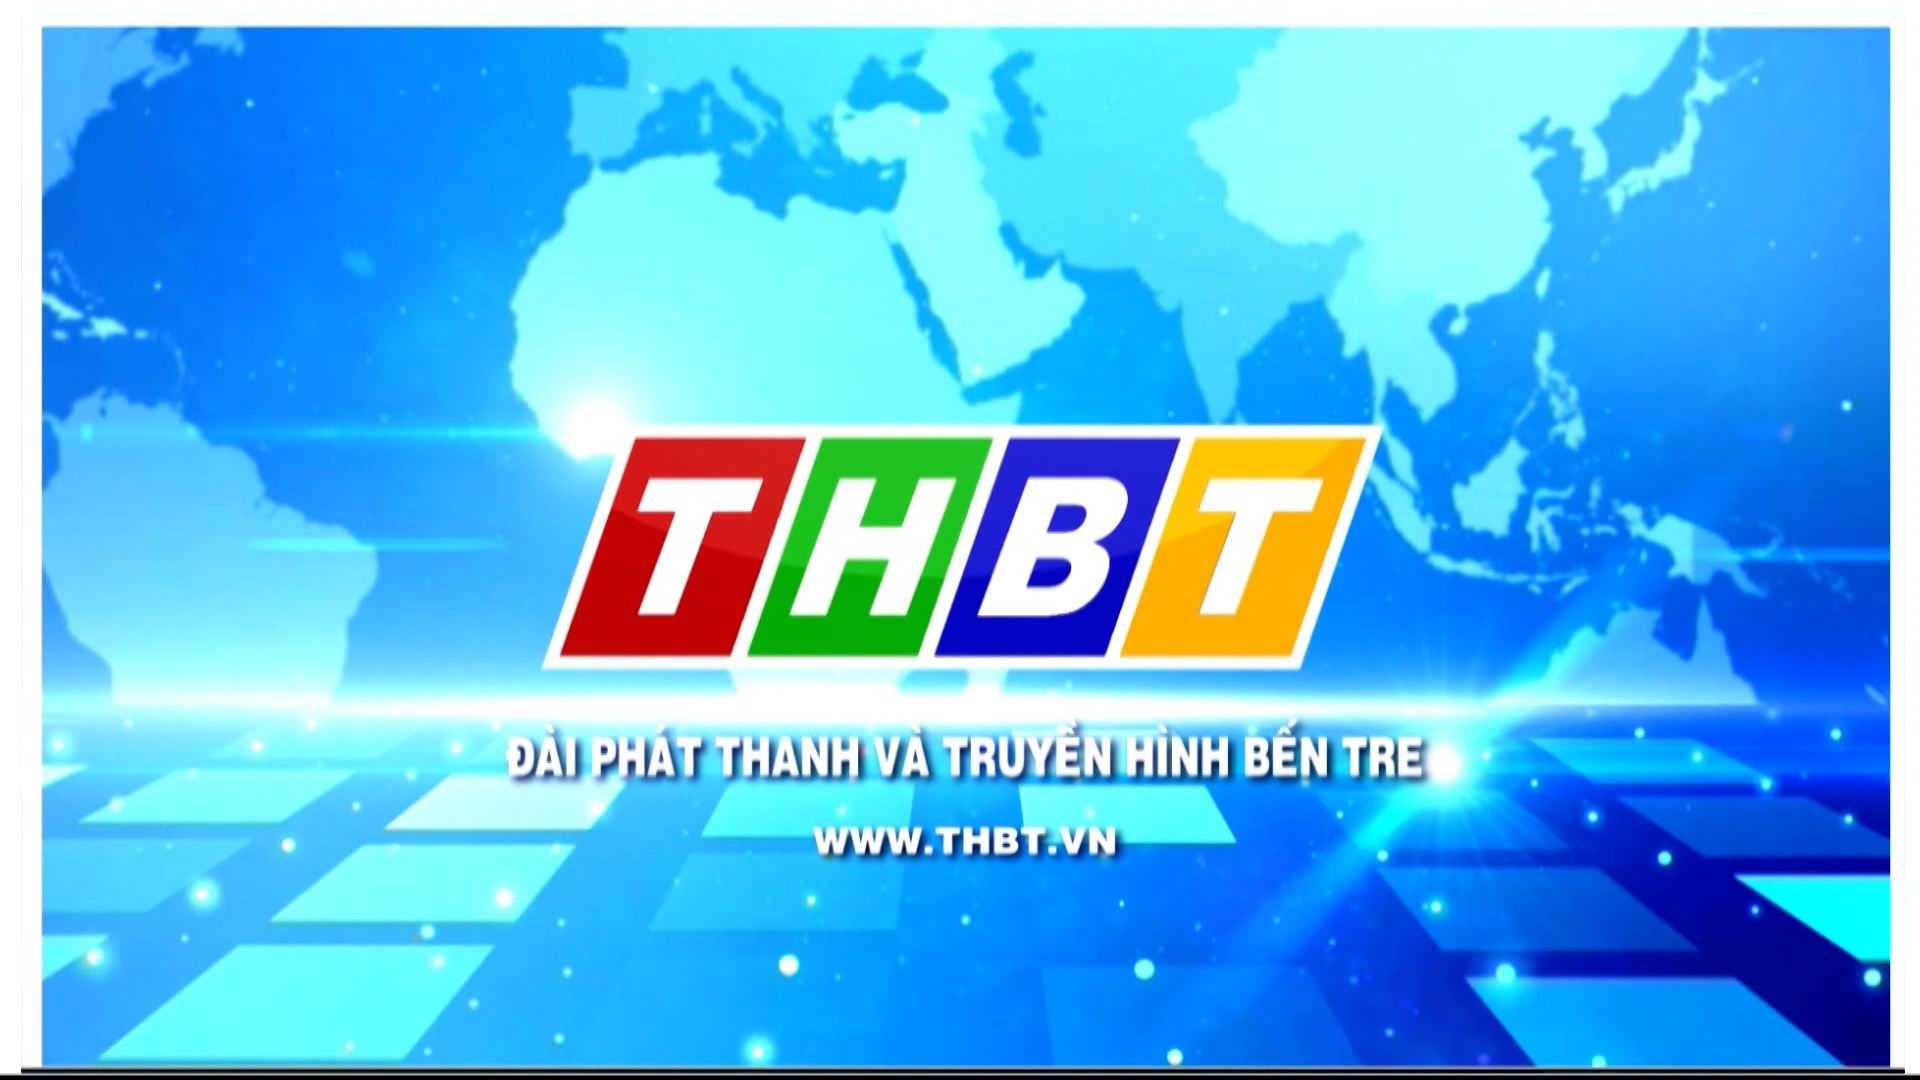 Xem Truyền hình Bến Tre dễ dàng trên THBT.VN và THBTgo